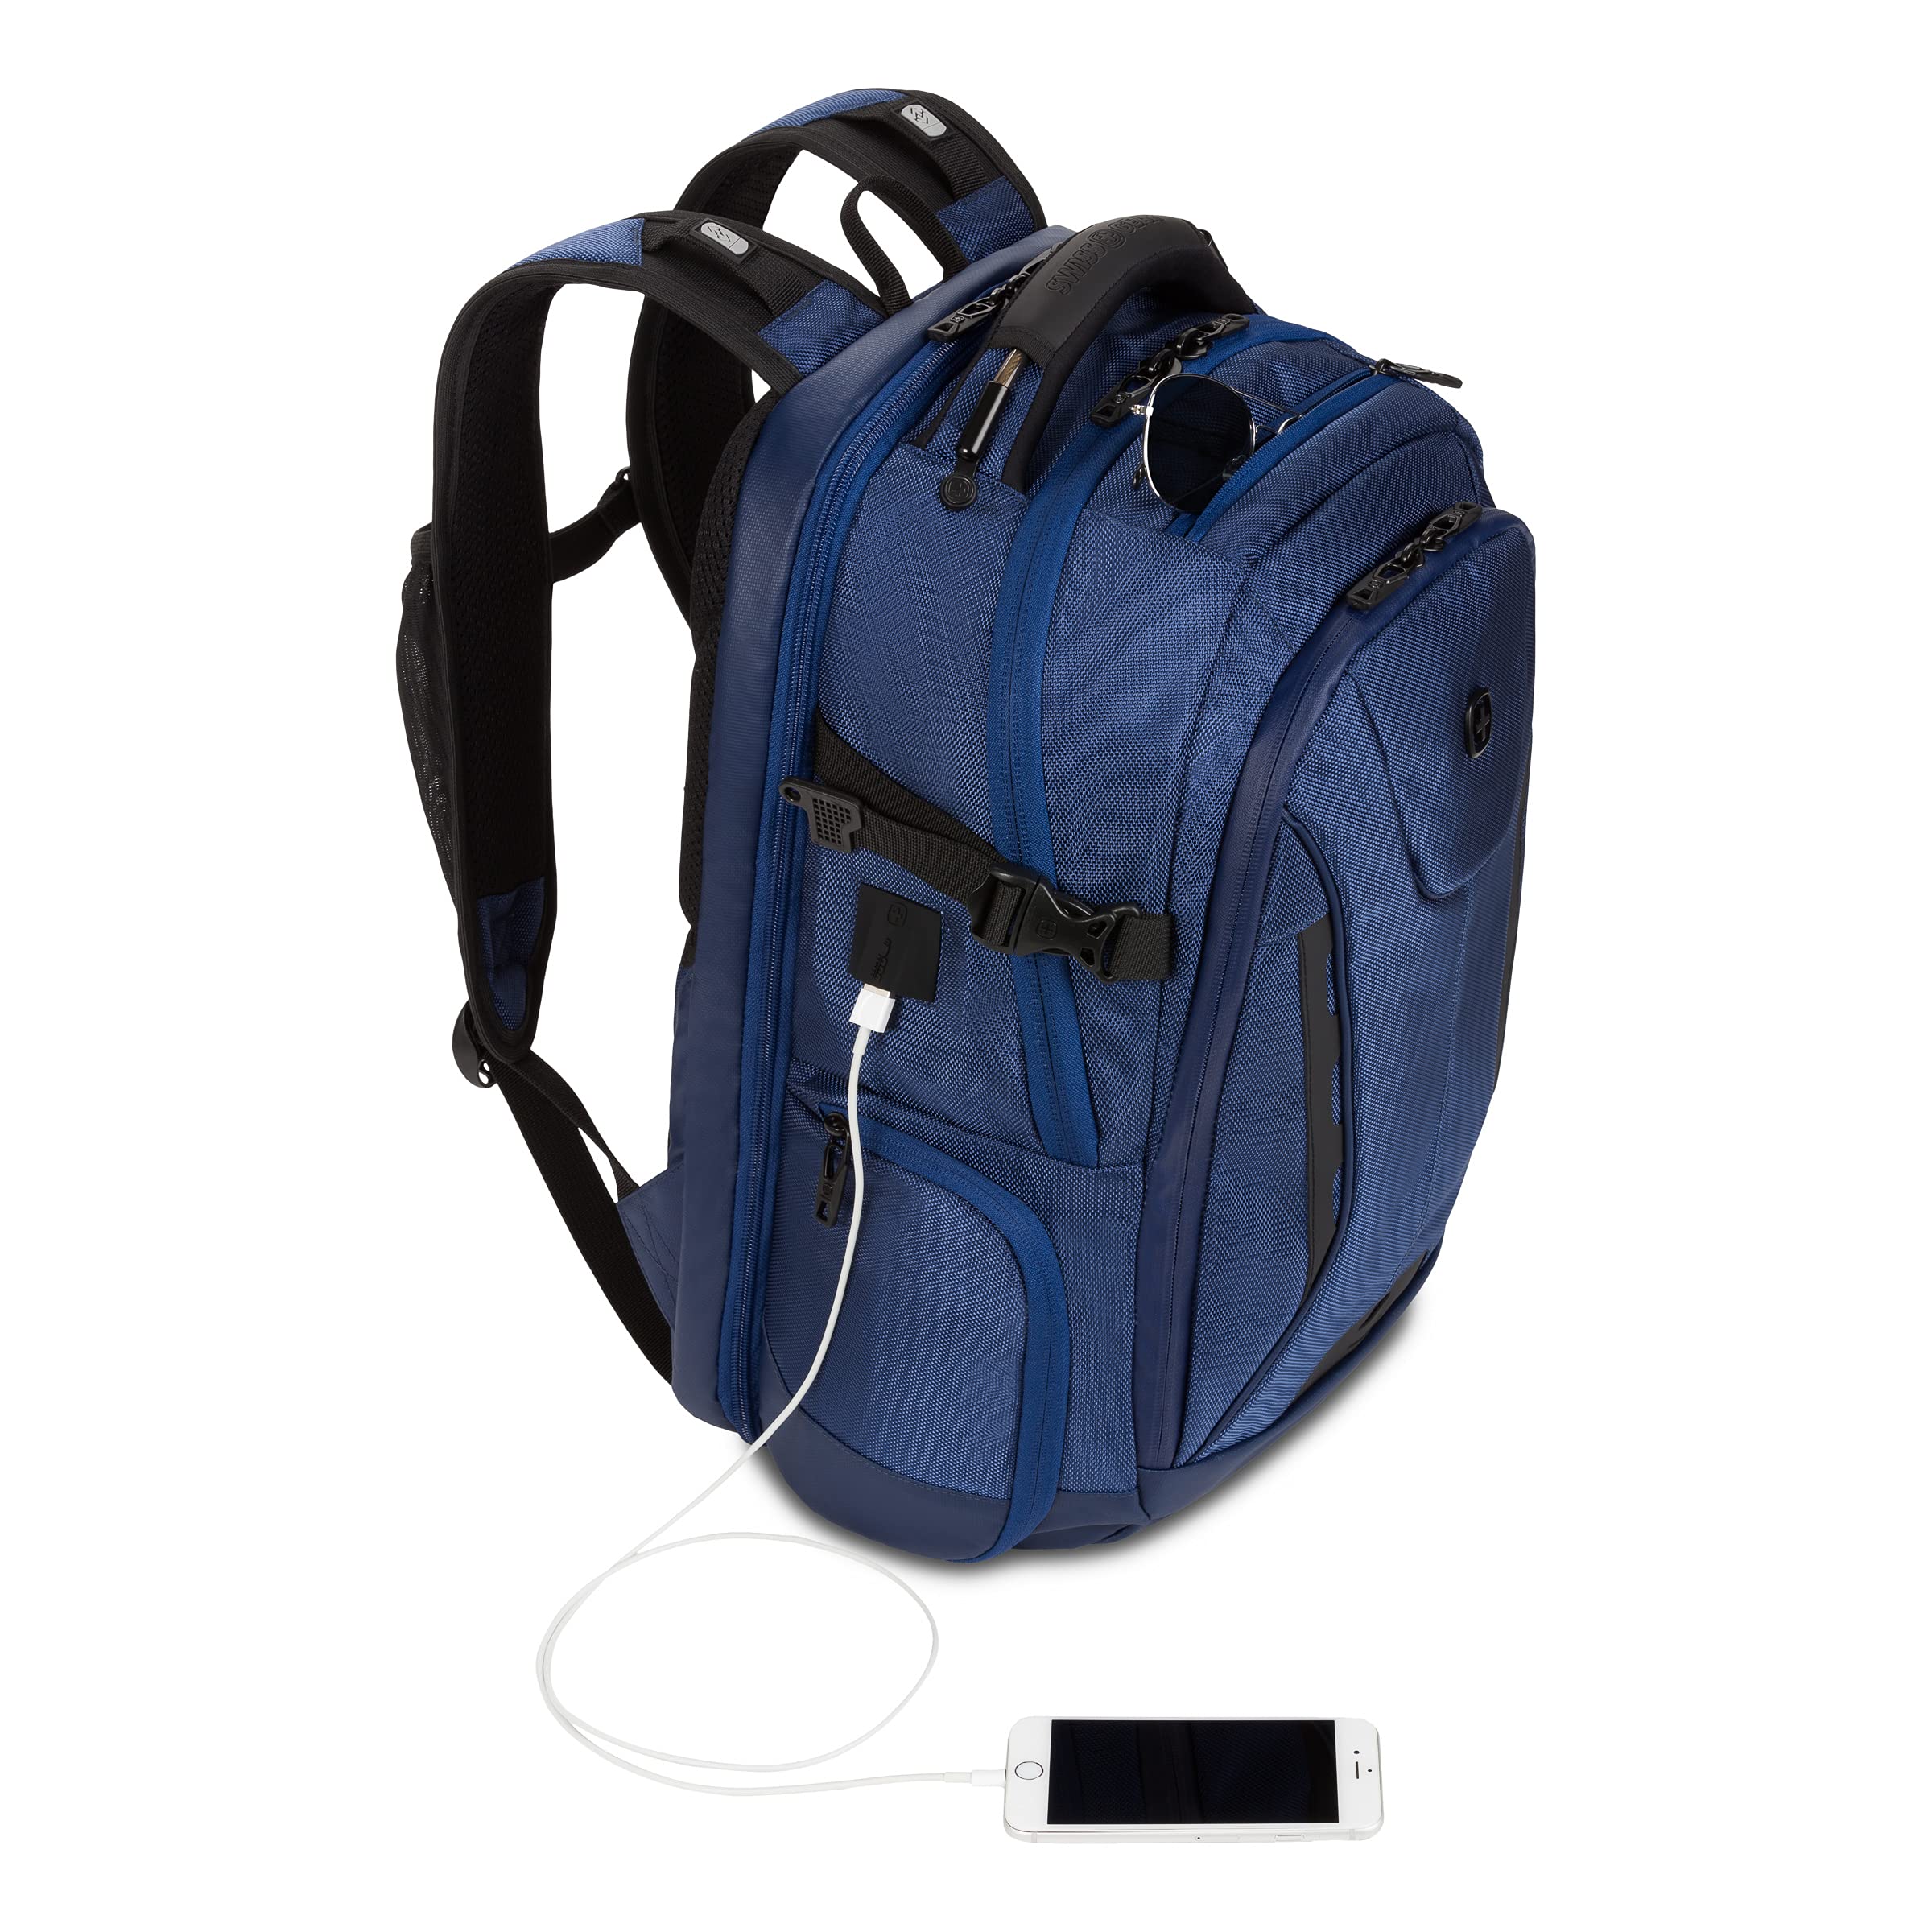 SwissGear ScanSmart Laptop Bag, Navy Ballistic, Fits 15-Inch Notebook